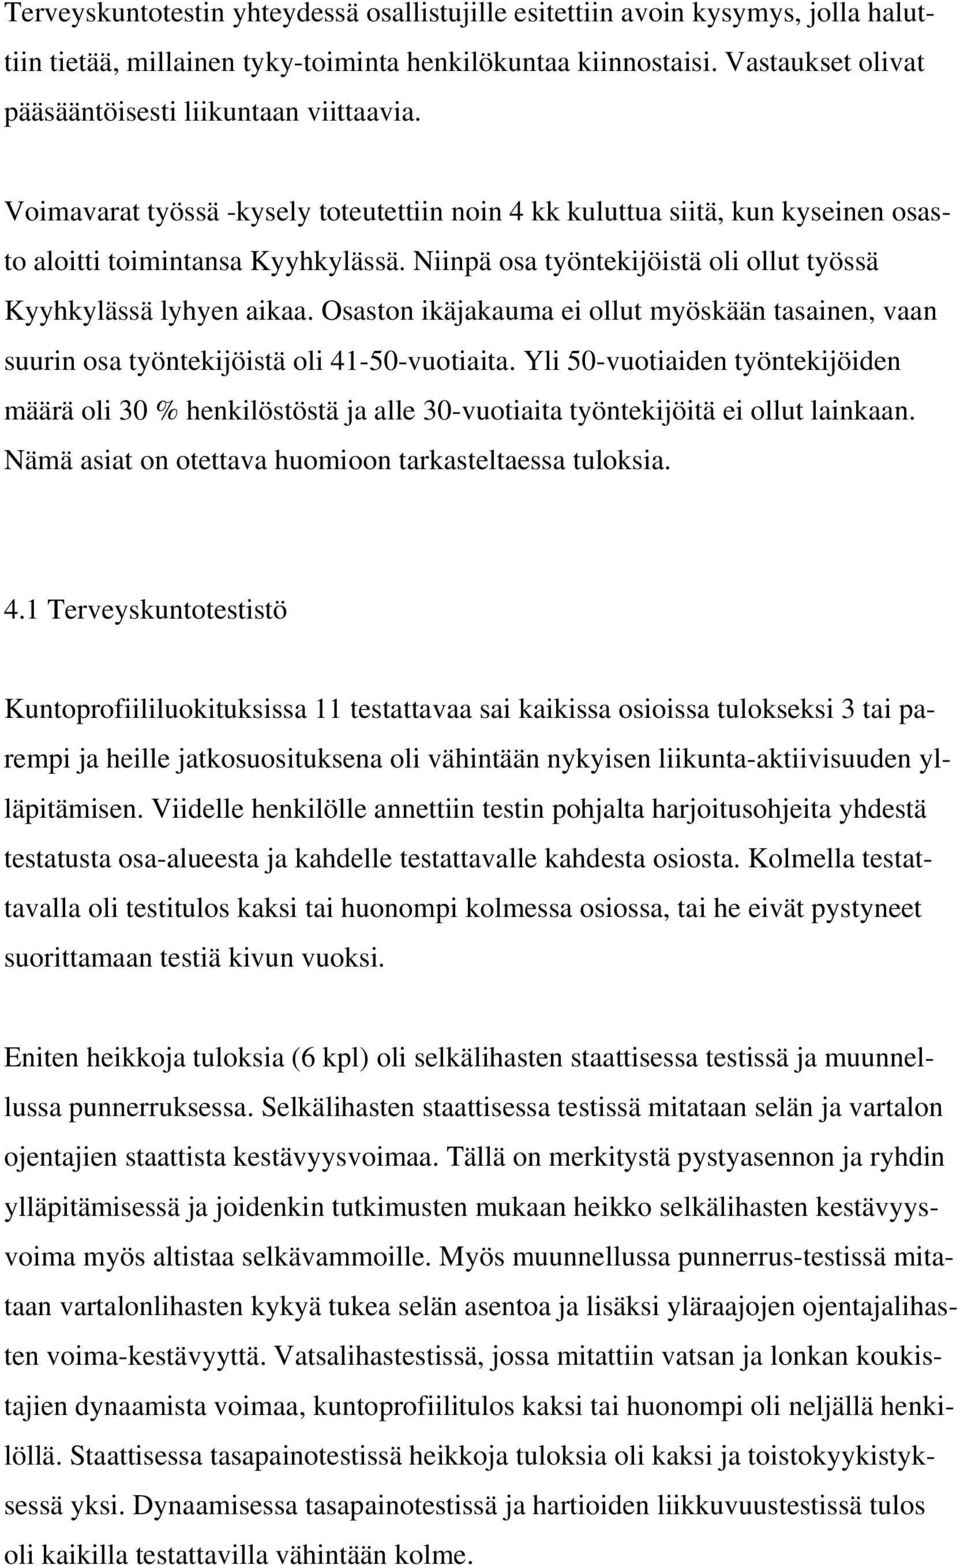 Niinpä osa työntekijöistä oli ollut työssä Kyyhkylässä lyhyen aikaa. Osaston ikäjakauma ei ollut myöskään tasainen, vaan suurin osa työntekijöistä oli 41-50-vuotiaita.